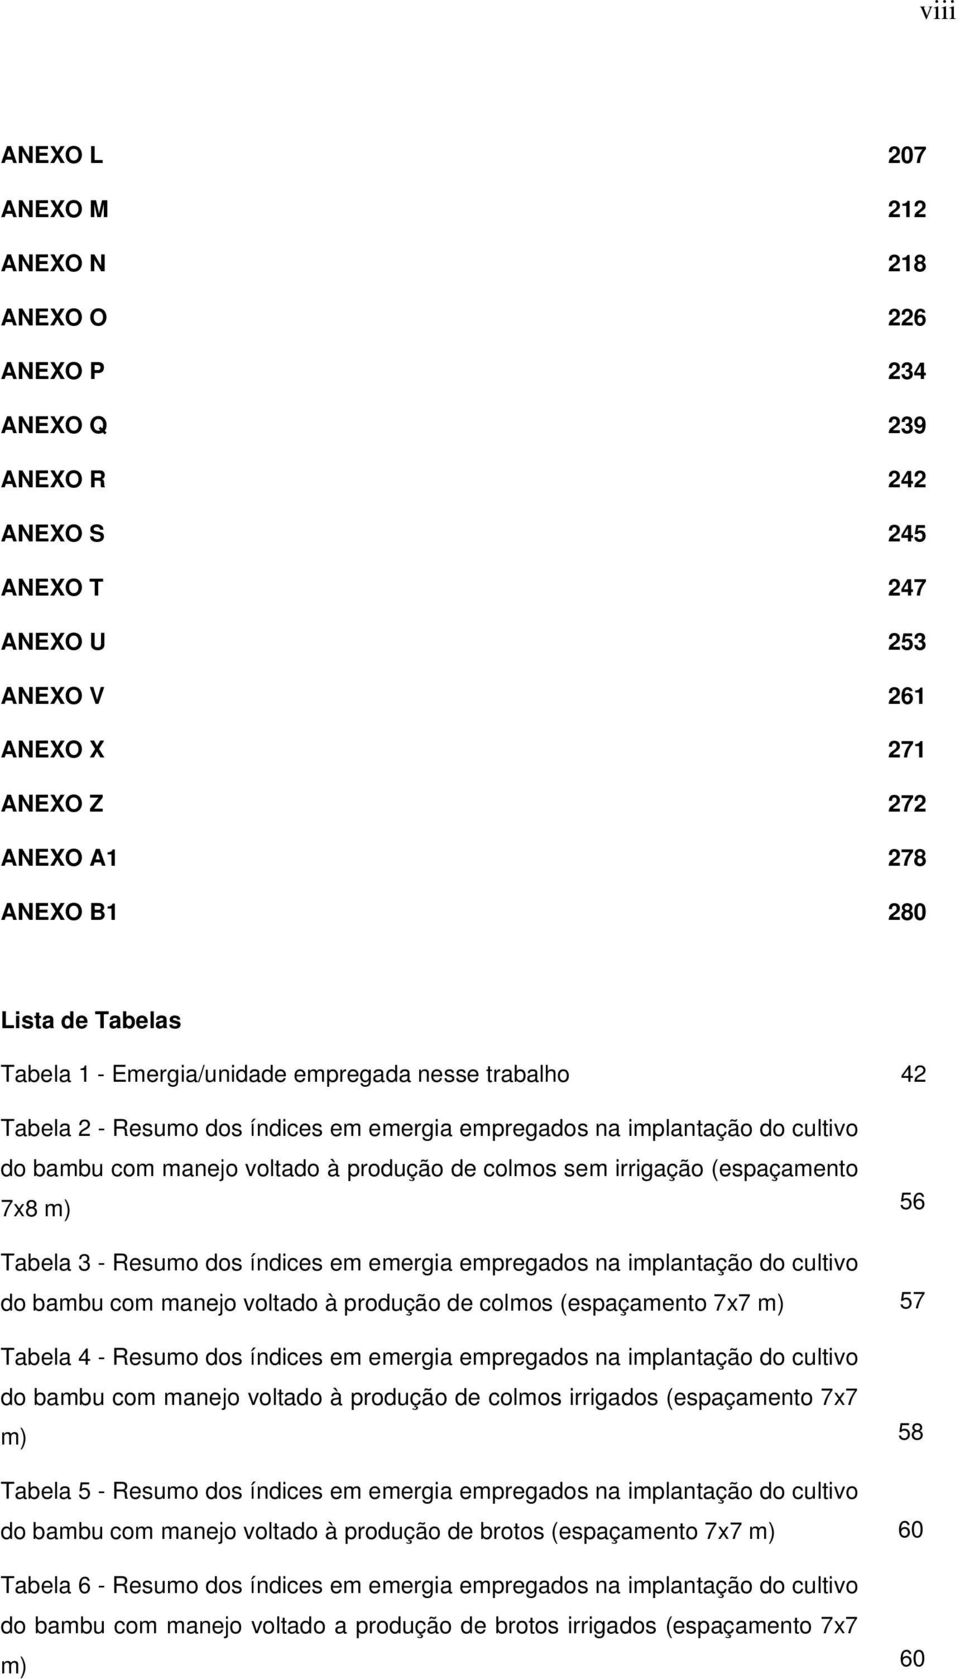 irrigação (espaçamento 7x8 m) 56 Tabela 3 - Resumo dos índices em emergia empregados na implantação do cultivo do bambu com manejo voltado à produção de colmos (espaçamento 7x7 m) 57 Tabela 4 -